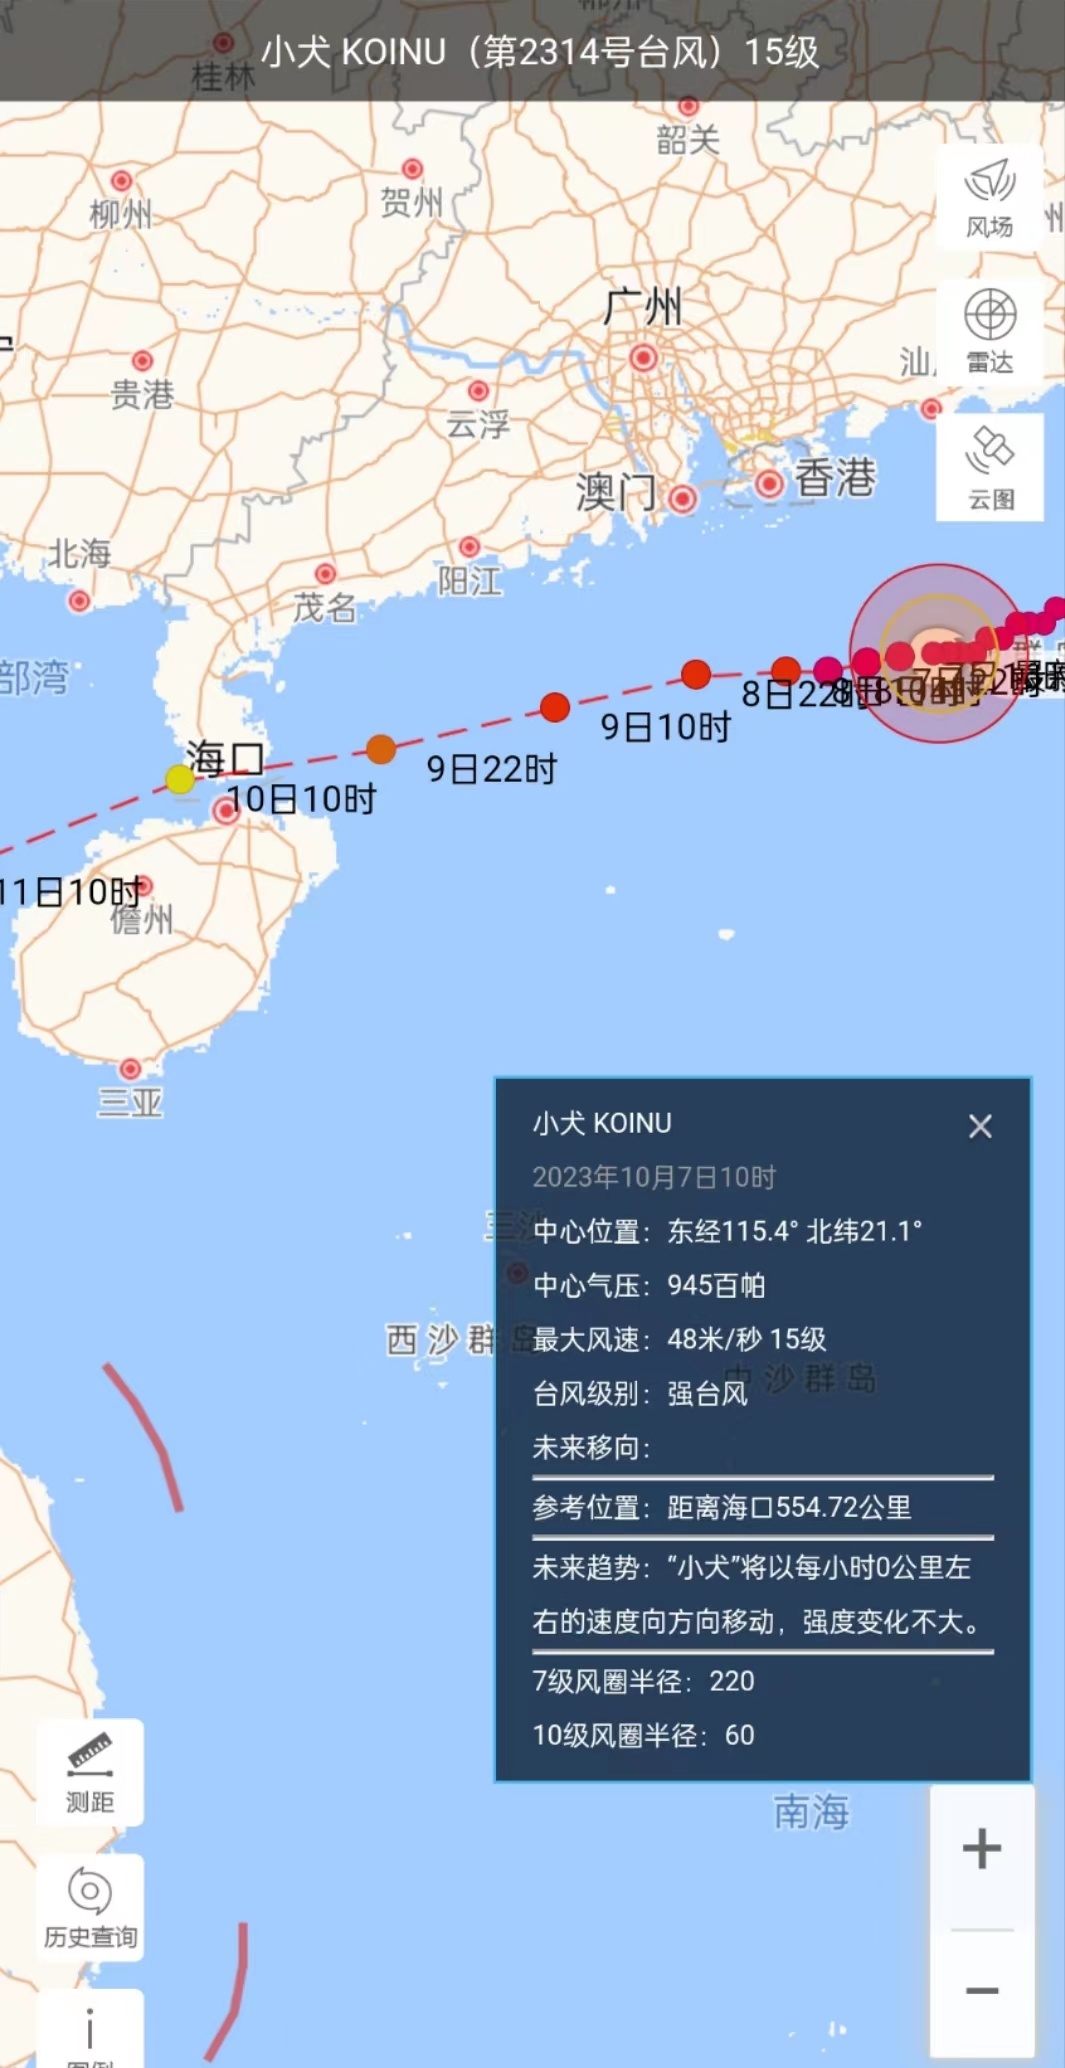 台风“小犬”渐近 海南发布台风四级预警